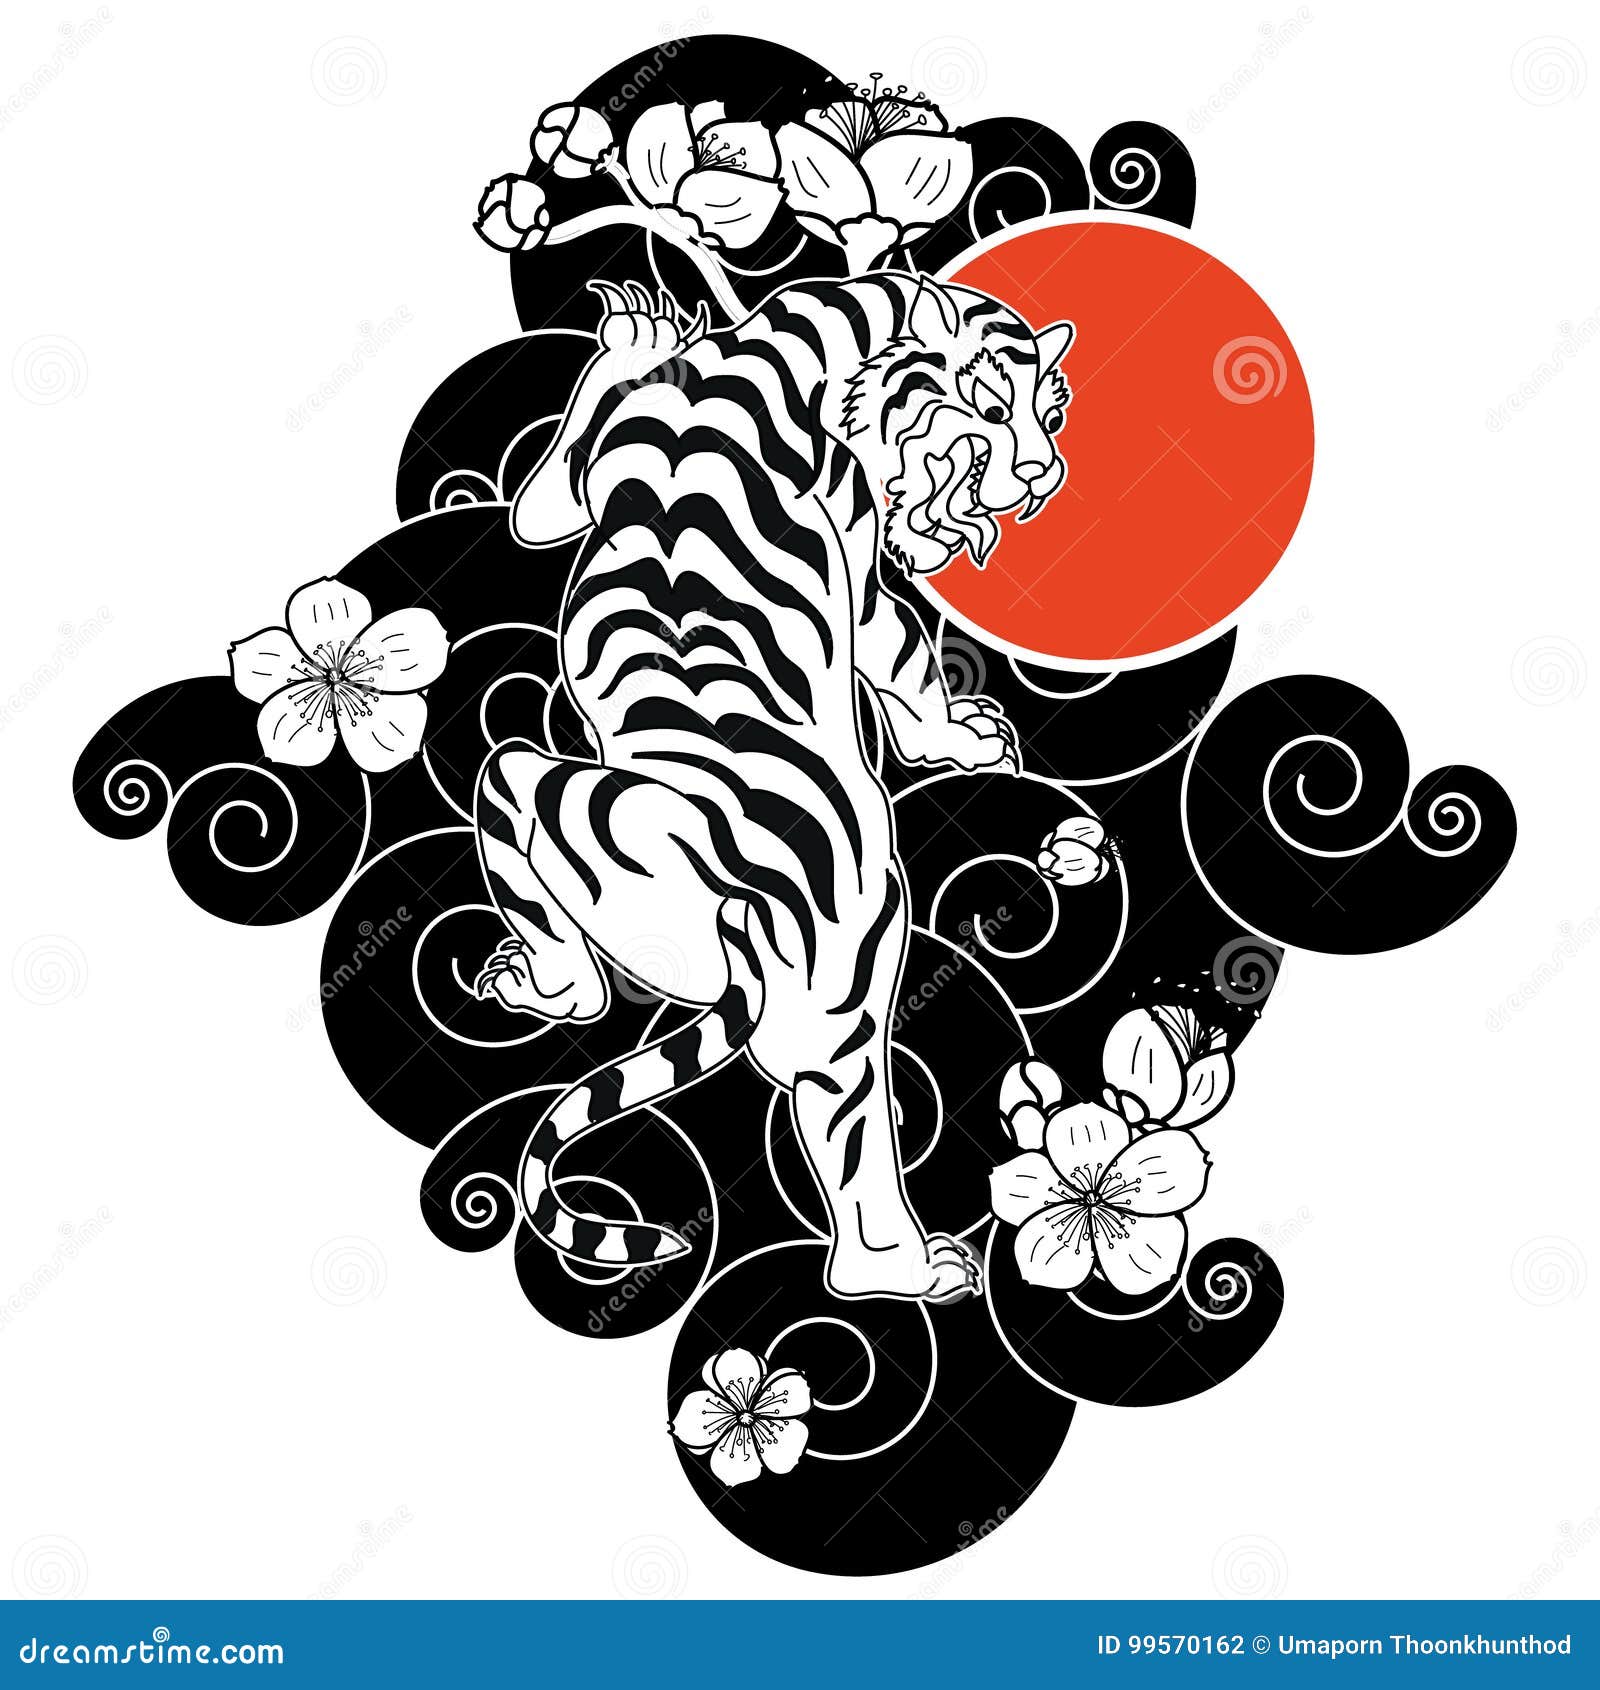 Sekayu, Sumatran Tiger Painting by Joe Satterwhite - Pixels